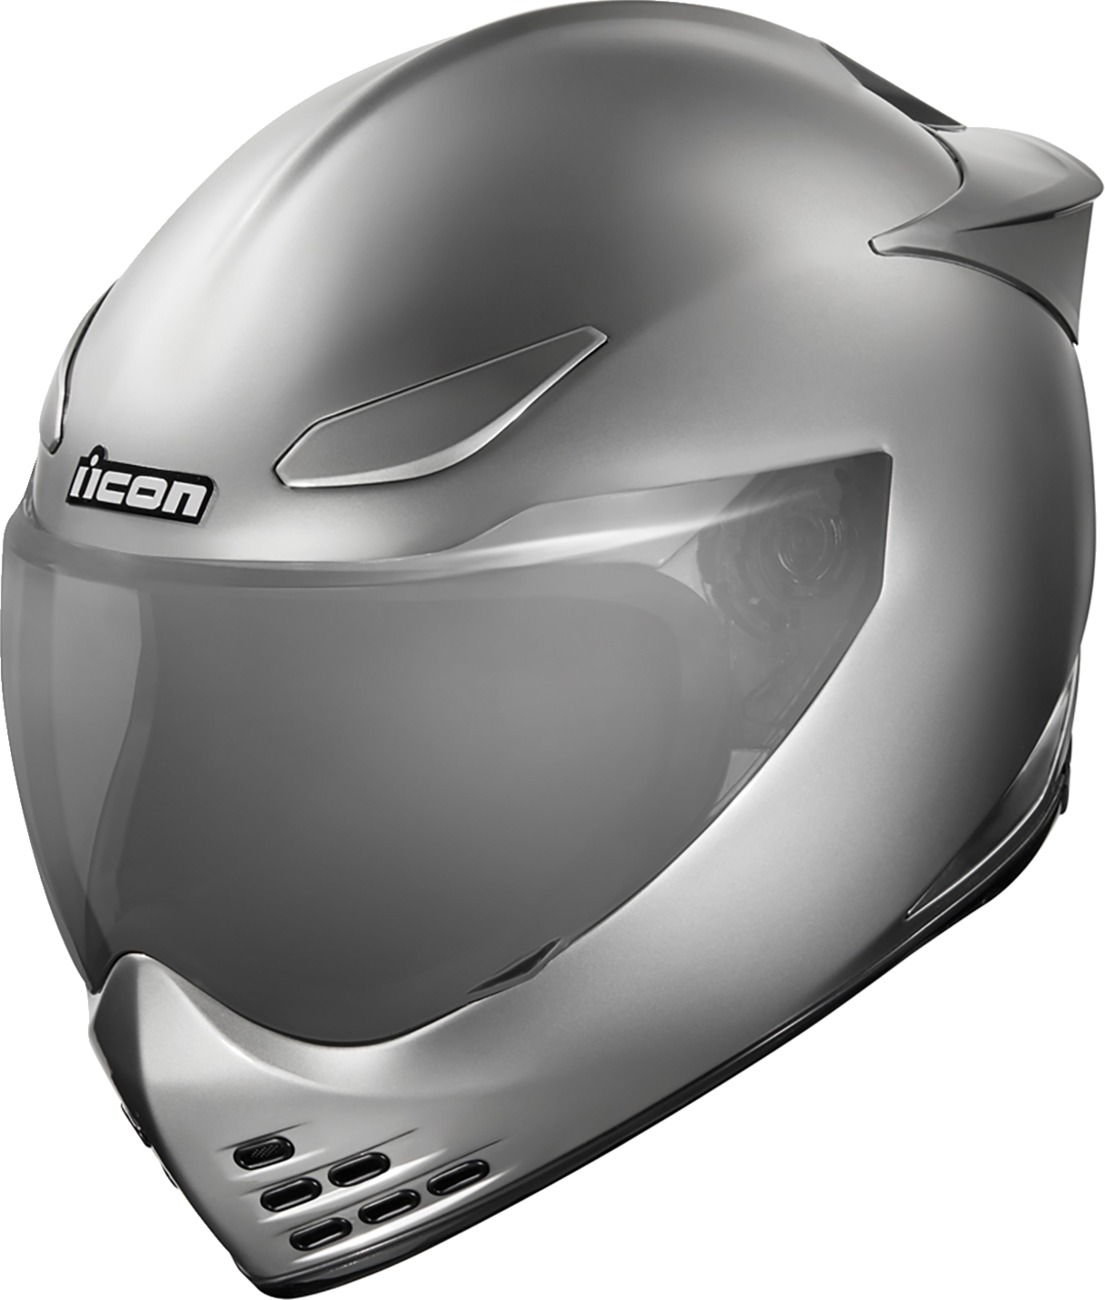 Domain Cornelius Helmet Silver Medium - Click Image to Close